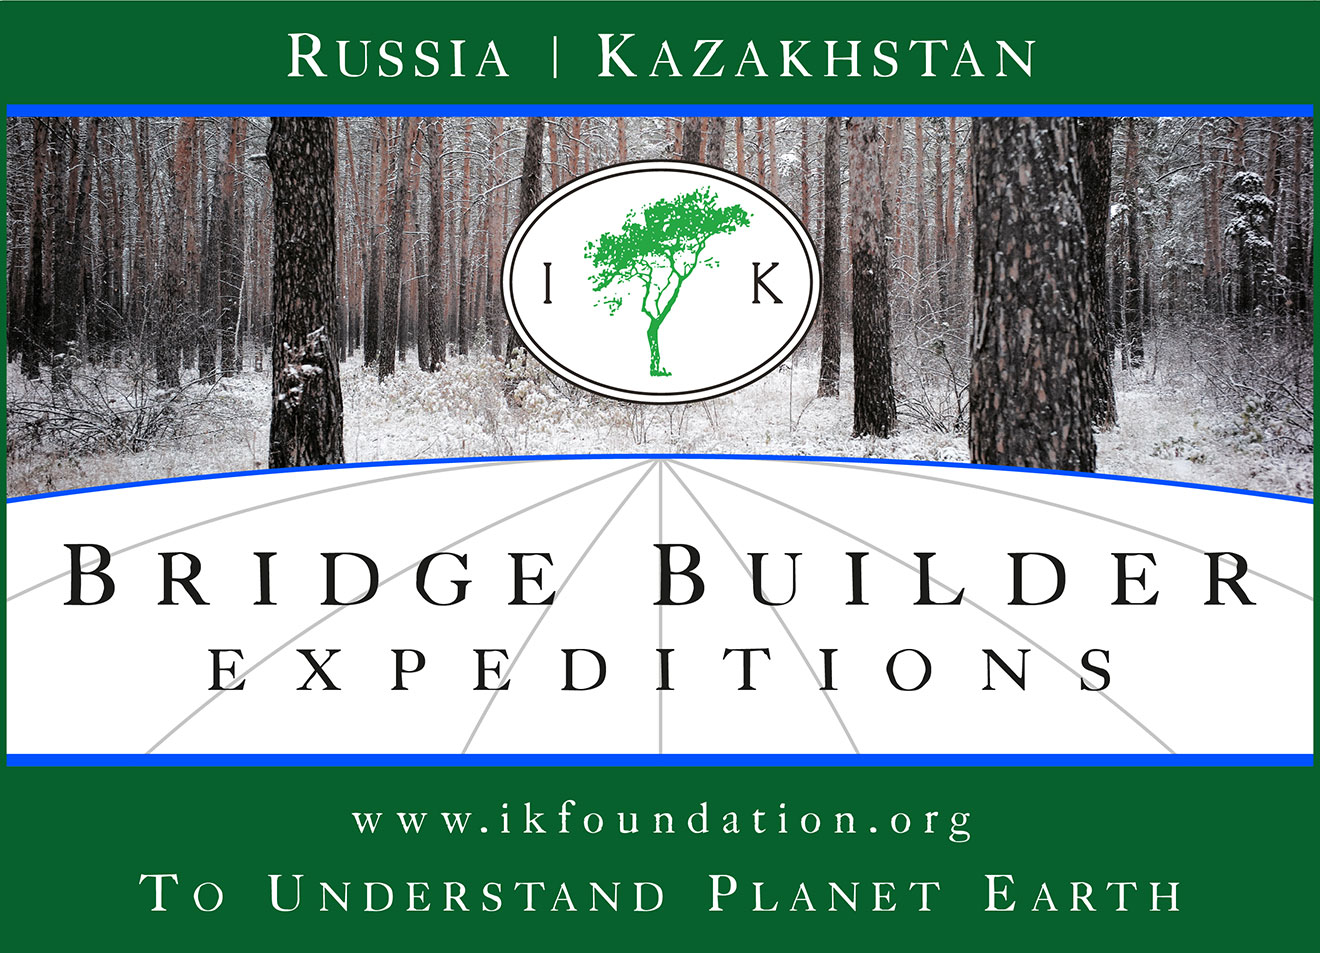 BRIDGE BUILDER EXPEDITIONS - RUSSIA & KAZAKHSTAN